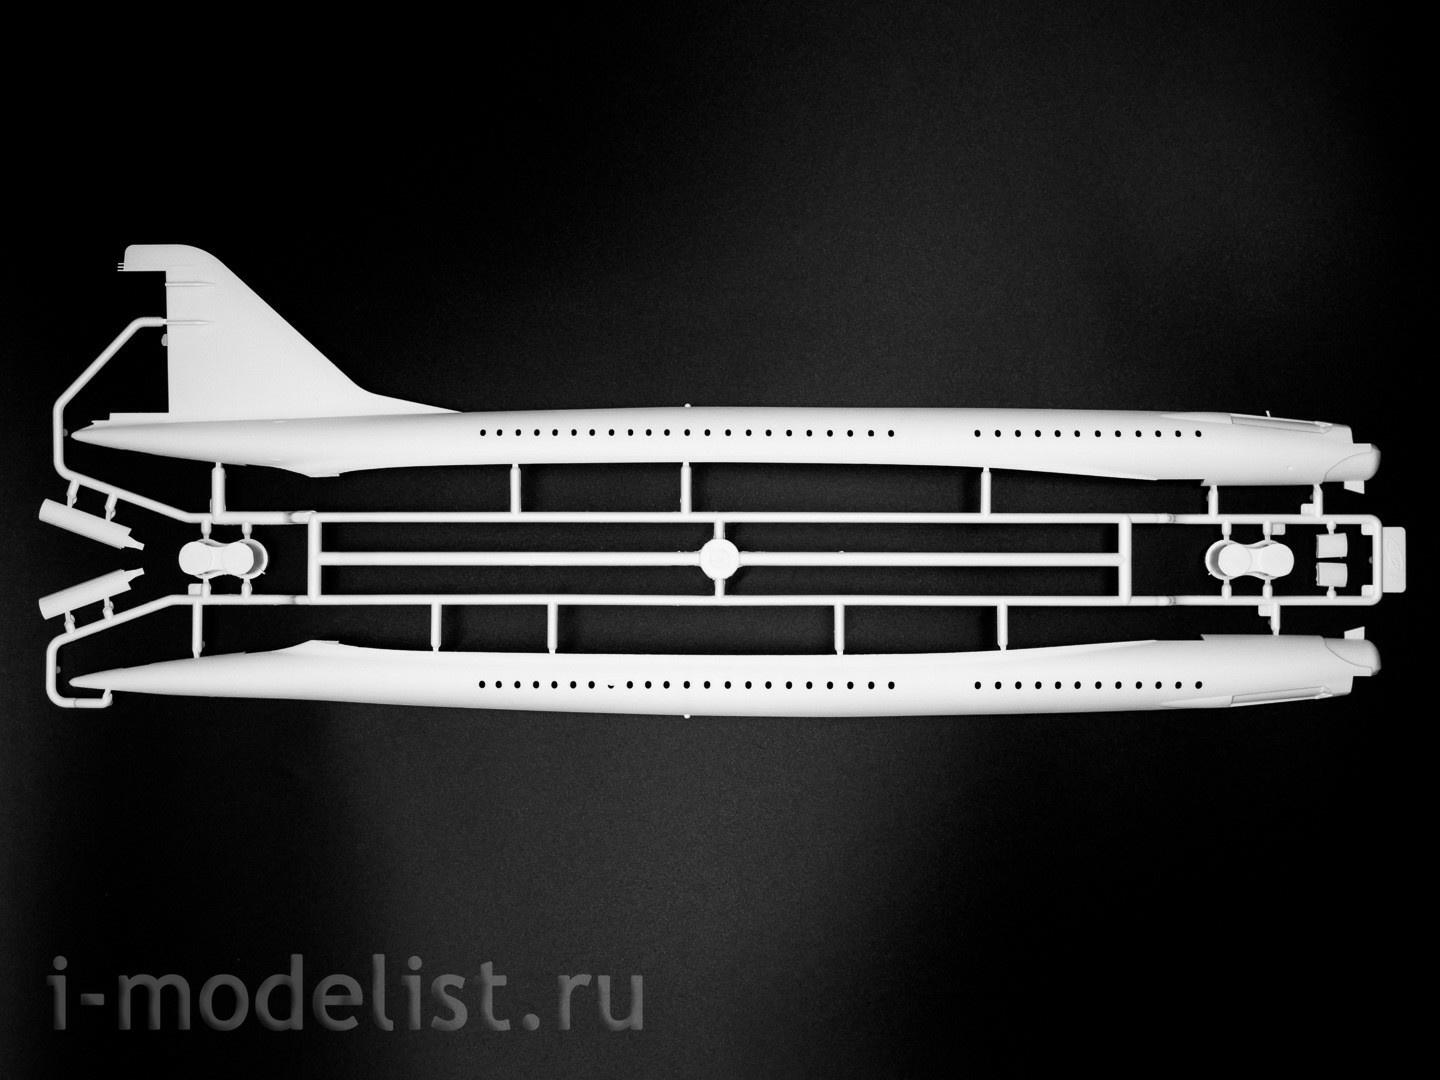 14401 ICM 1/144 Tu-144, Soviet supersonic passenger aircraft